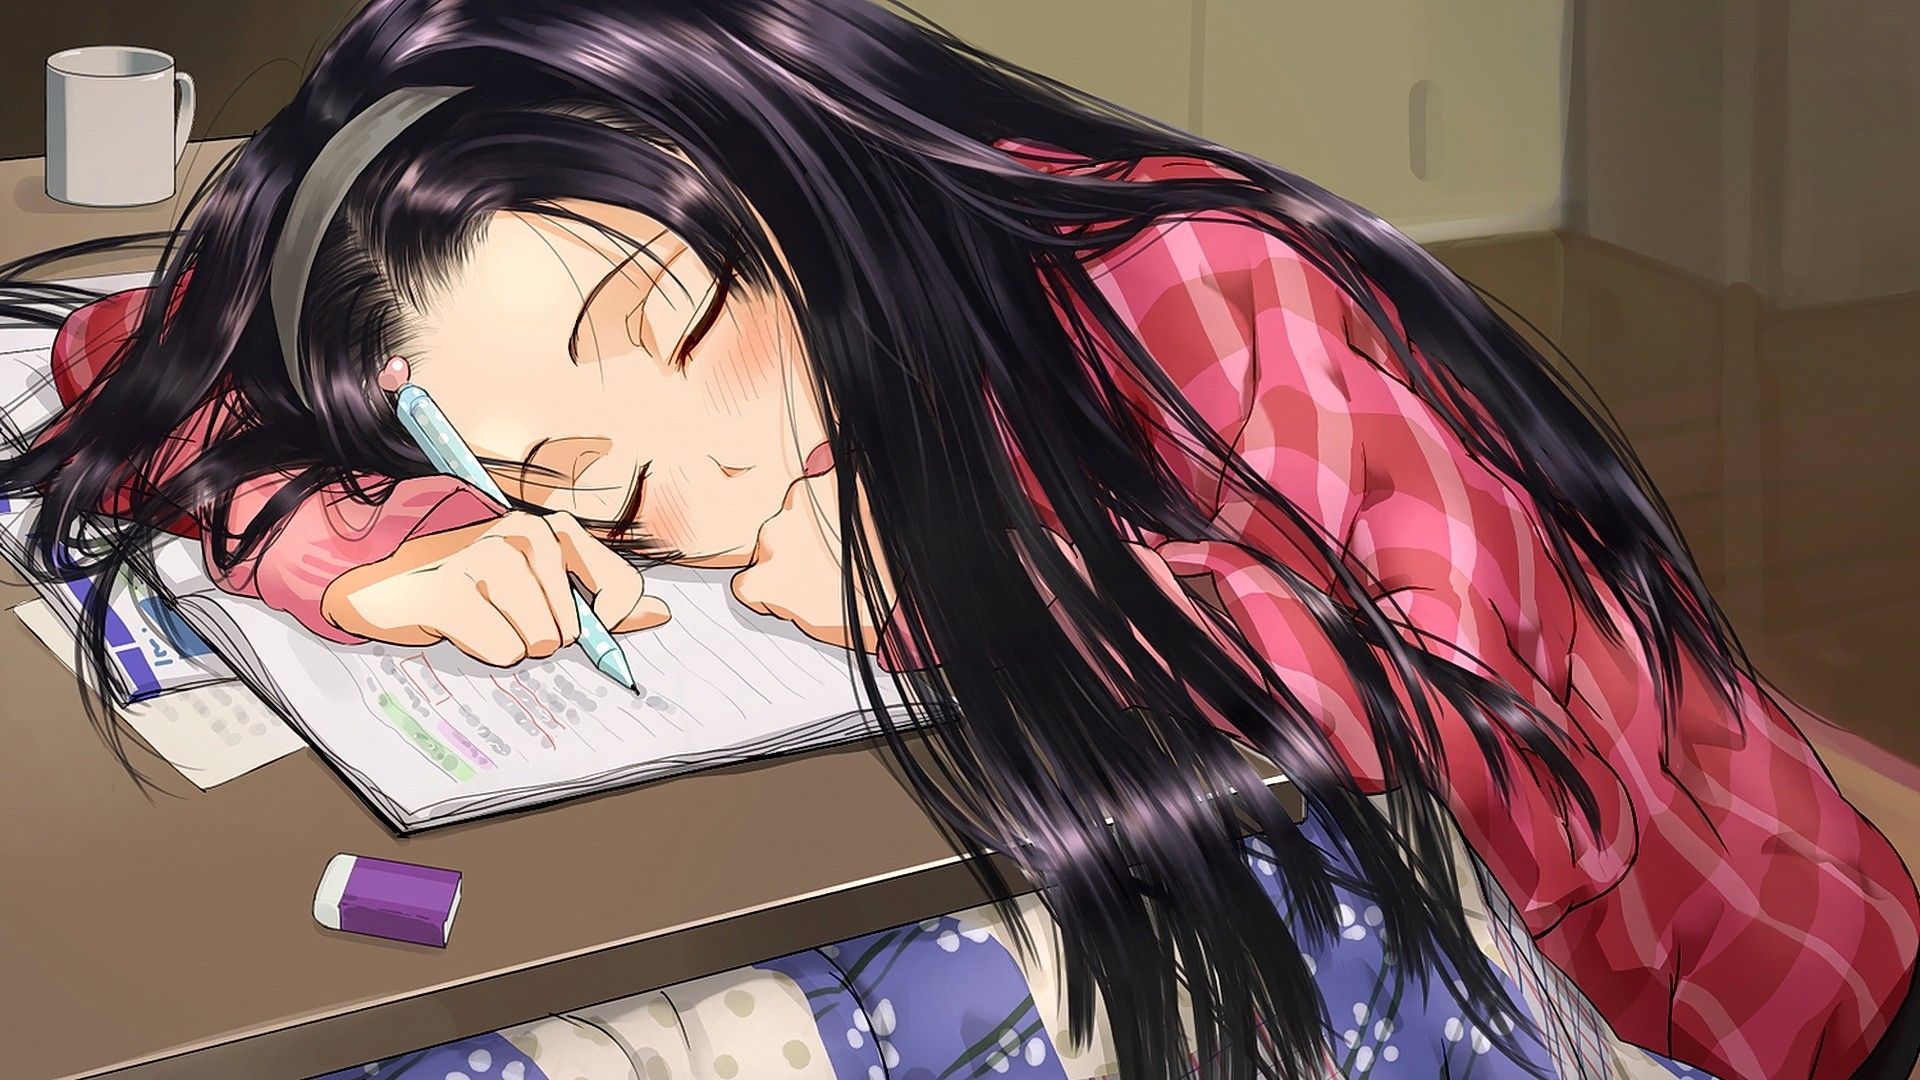 Girl Anime Sleep Wallpapers Wallpaper Cave